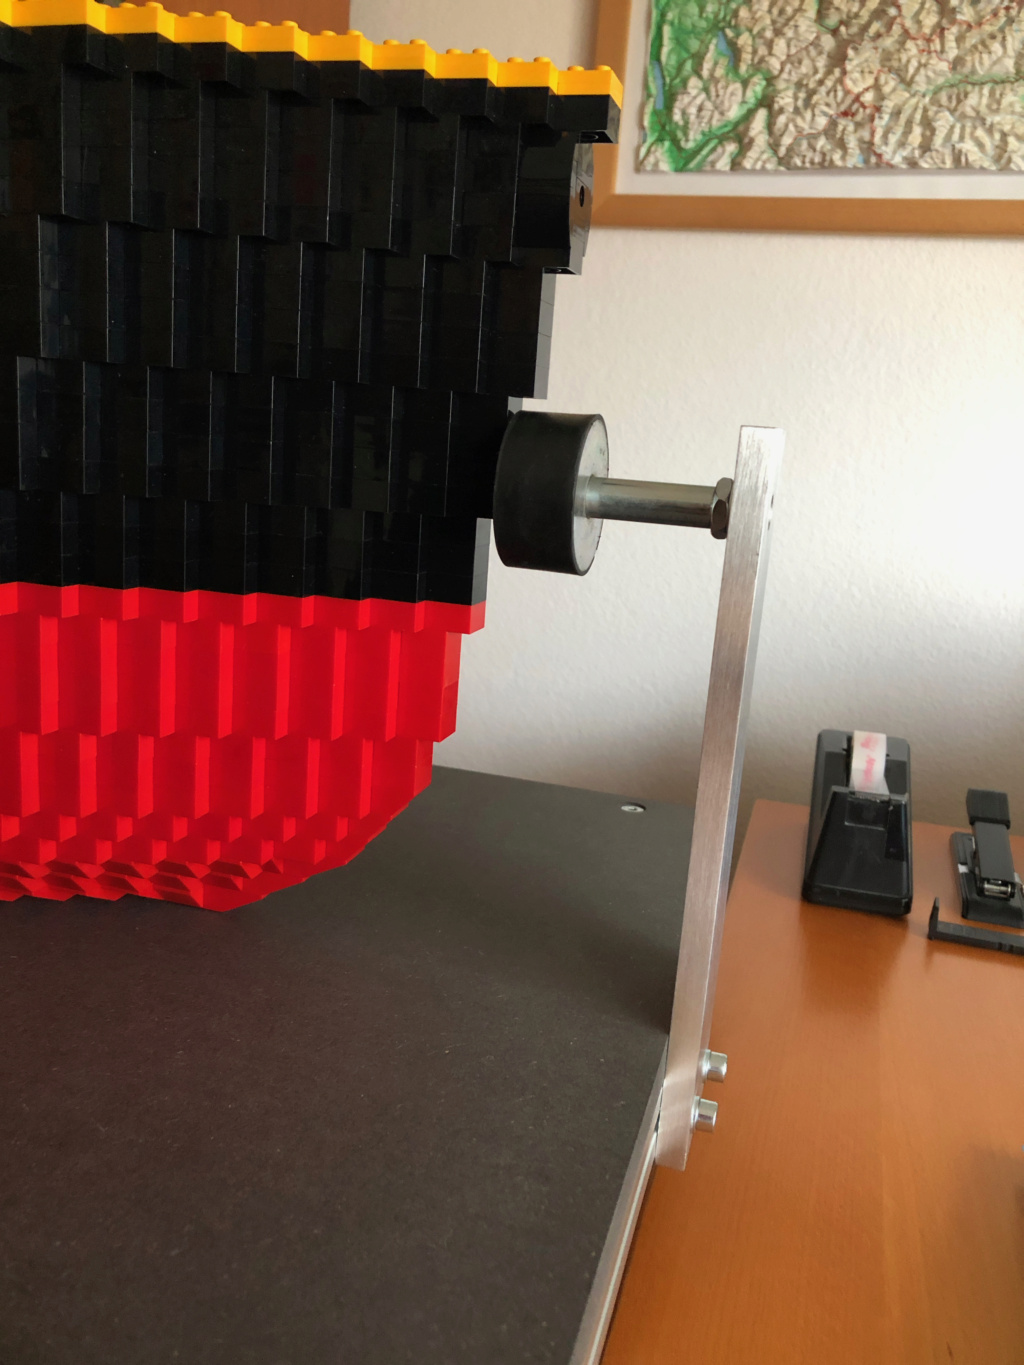 Réalisation d'une grande maquette en Lego de 60 000 pièces Titan142